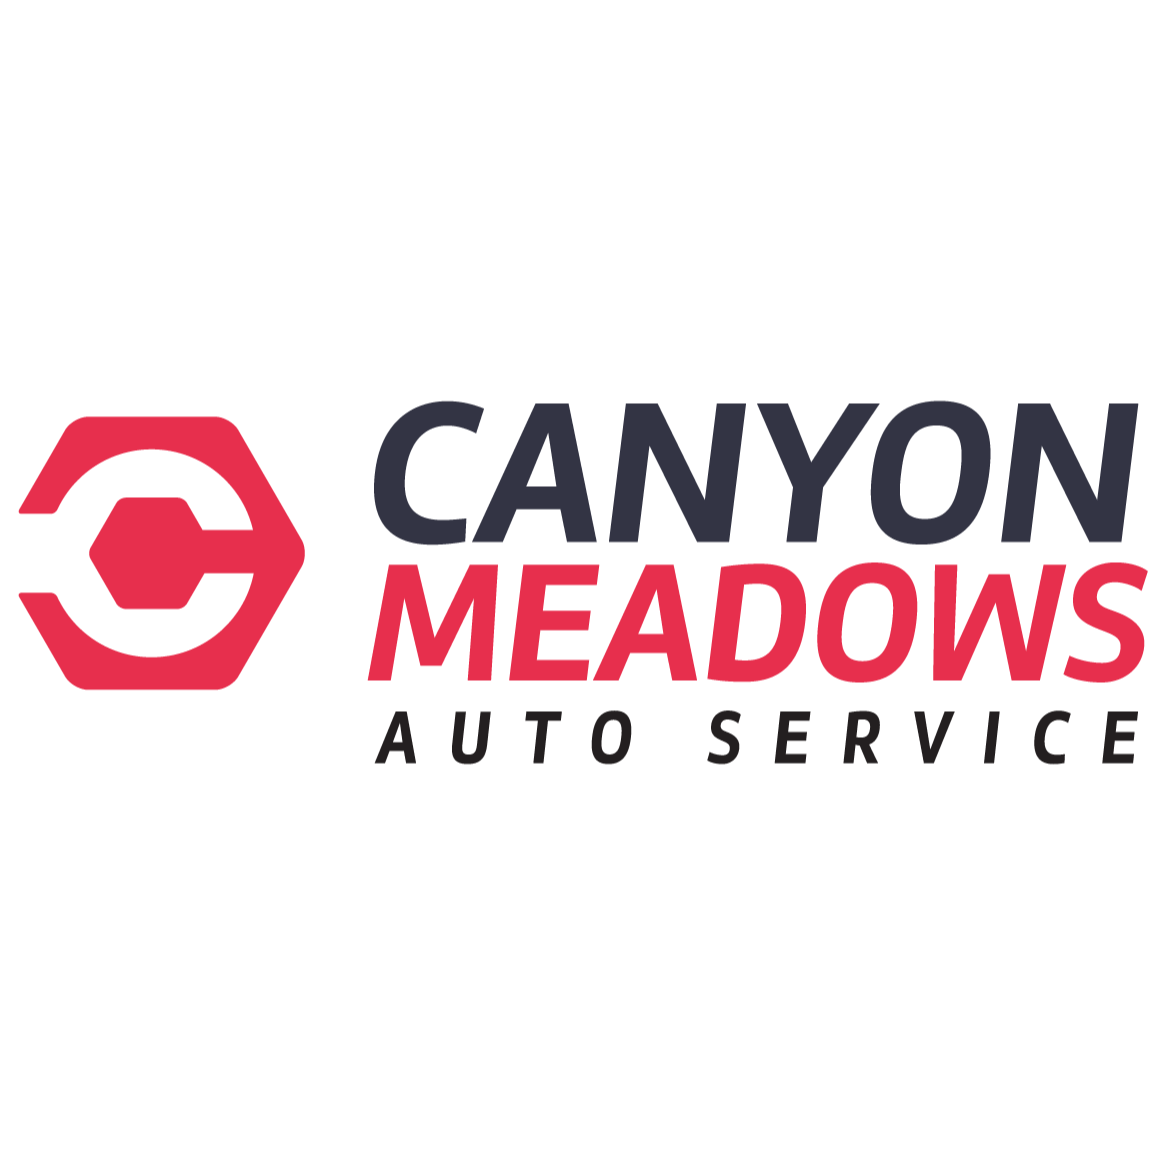 Canyon Meadows Auto Service